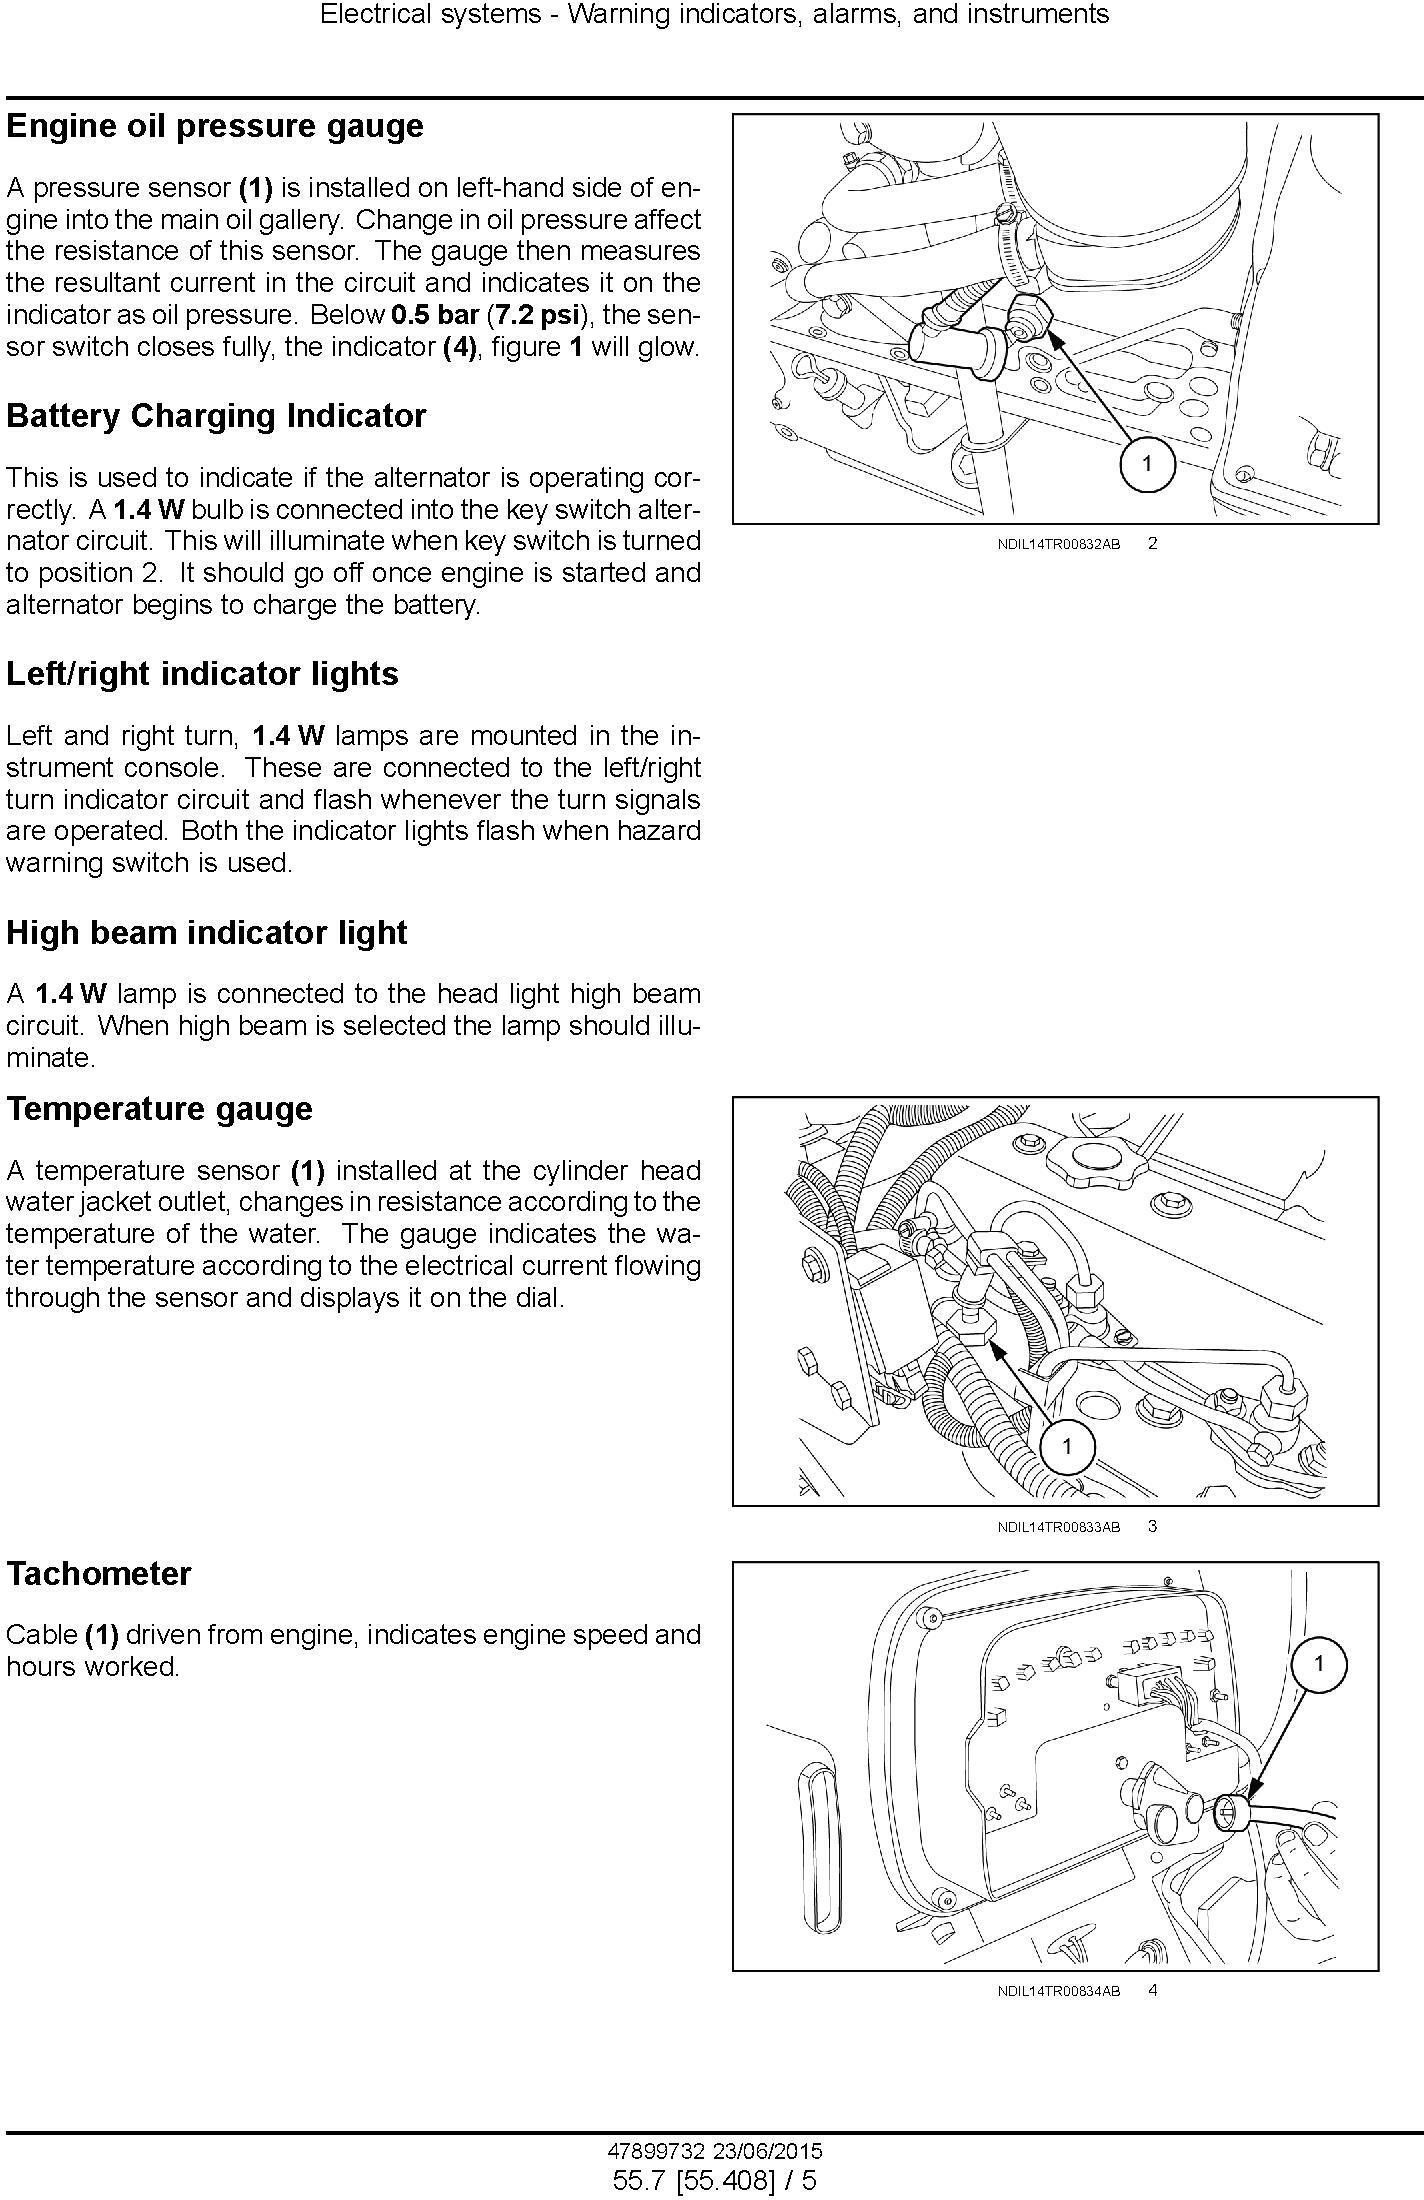 New Holland TT55, TT65, TT75 2WD and 4WD Tier 3 Tractors Service Manual - 1